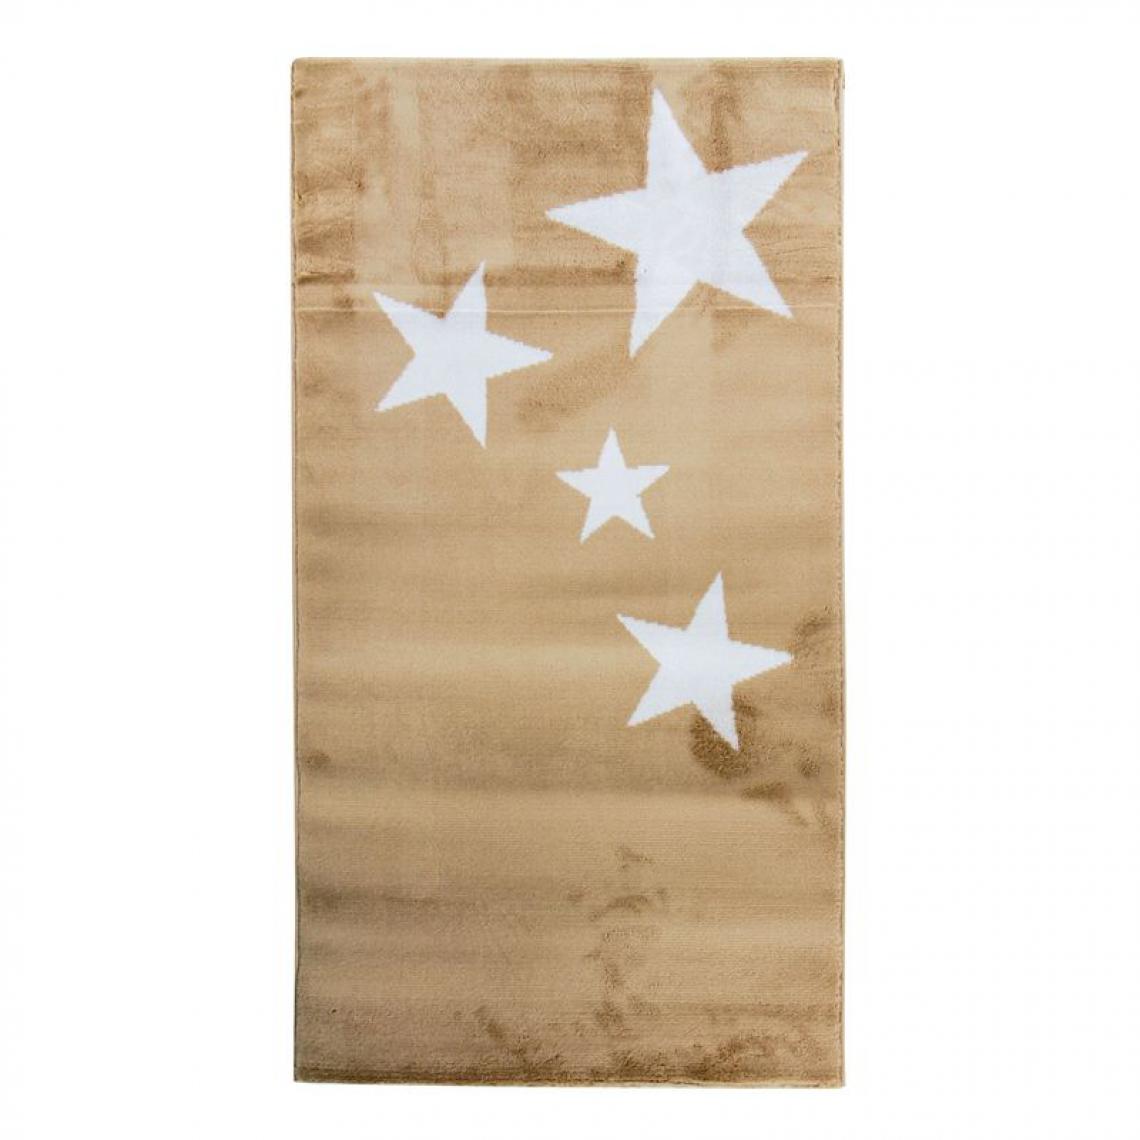 Thedecofactory - STARS - Tapis toucher laineux motifs étoiles beige 80x150 - Tapis